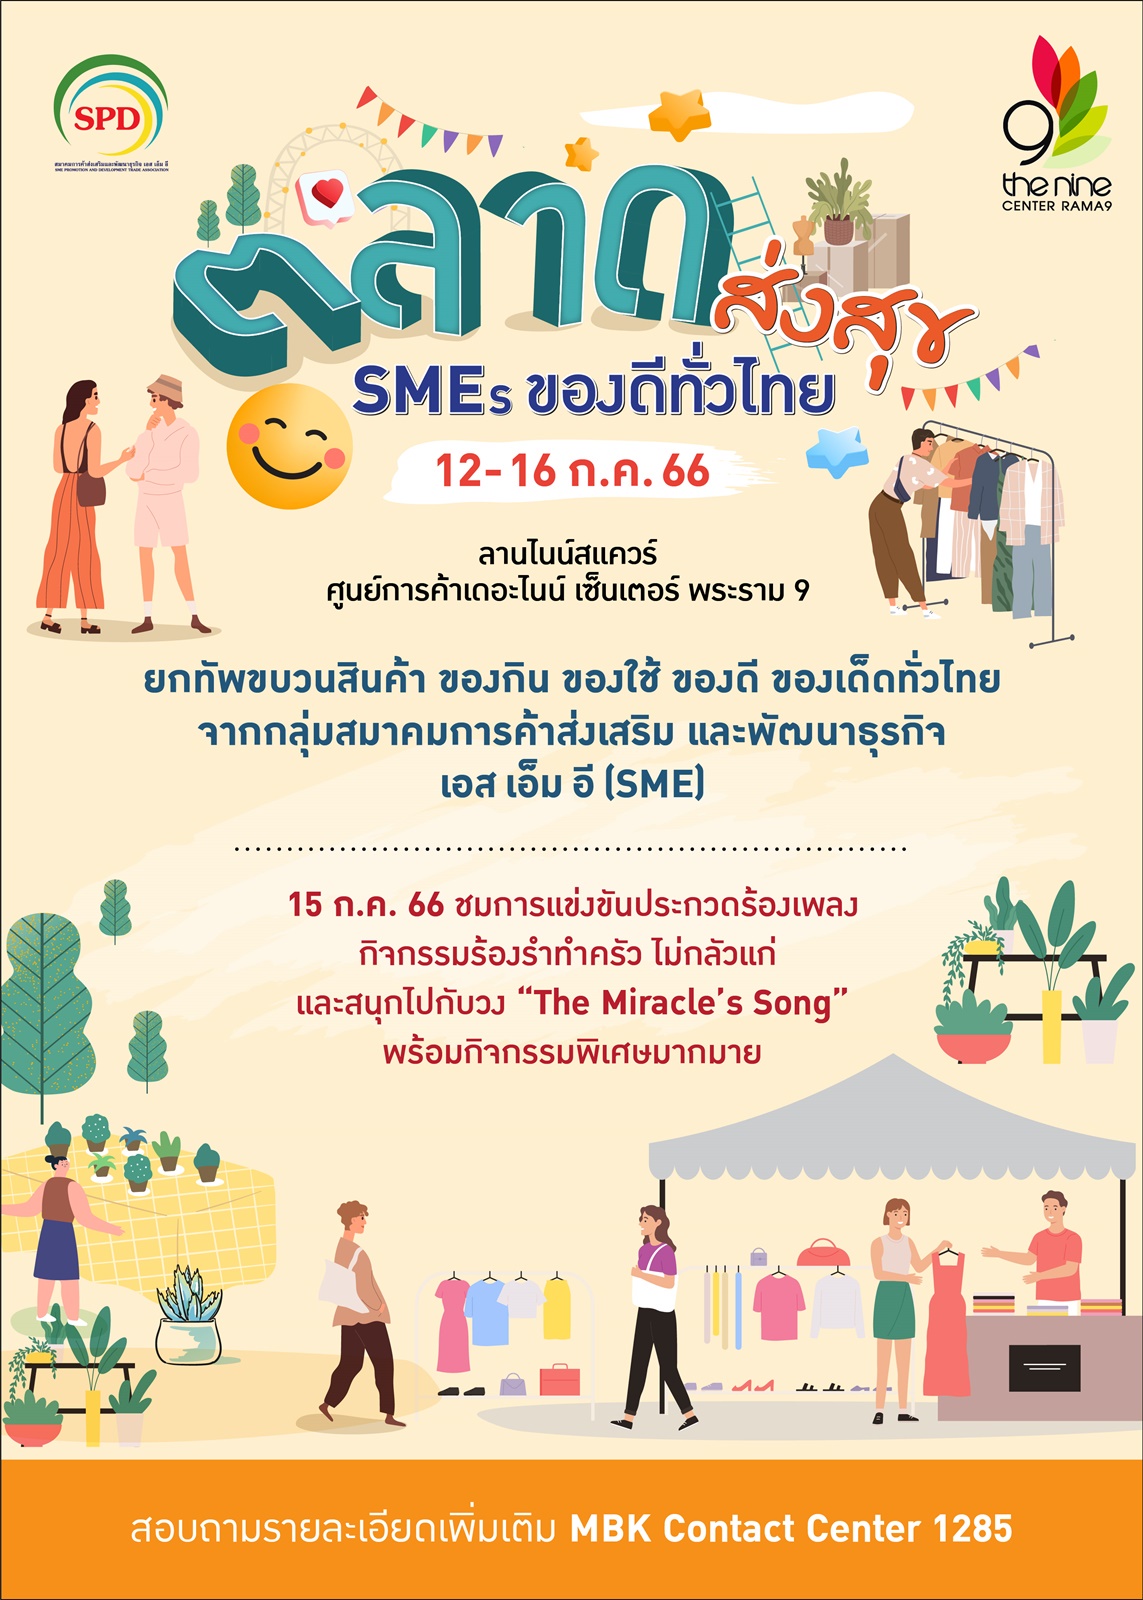 เดอะไนน์ เซ็นเตอร์ พระราม 9 รวมของดีของเด็ดทั่วไทย มาให้ช้อปสนุก @ ตลาดส่งสุข SMEs ของดีทั่วไทย พลาดไม่ได้ 12-16 ก.ค. นี้